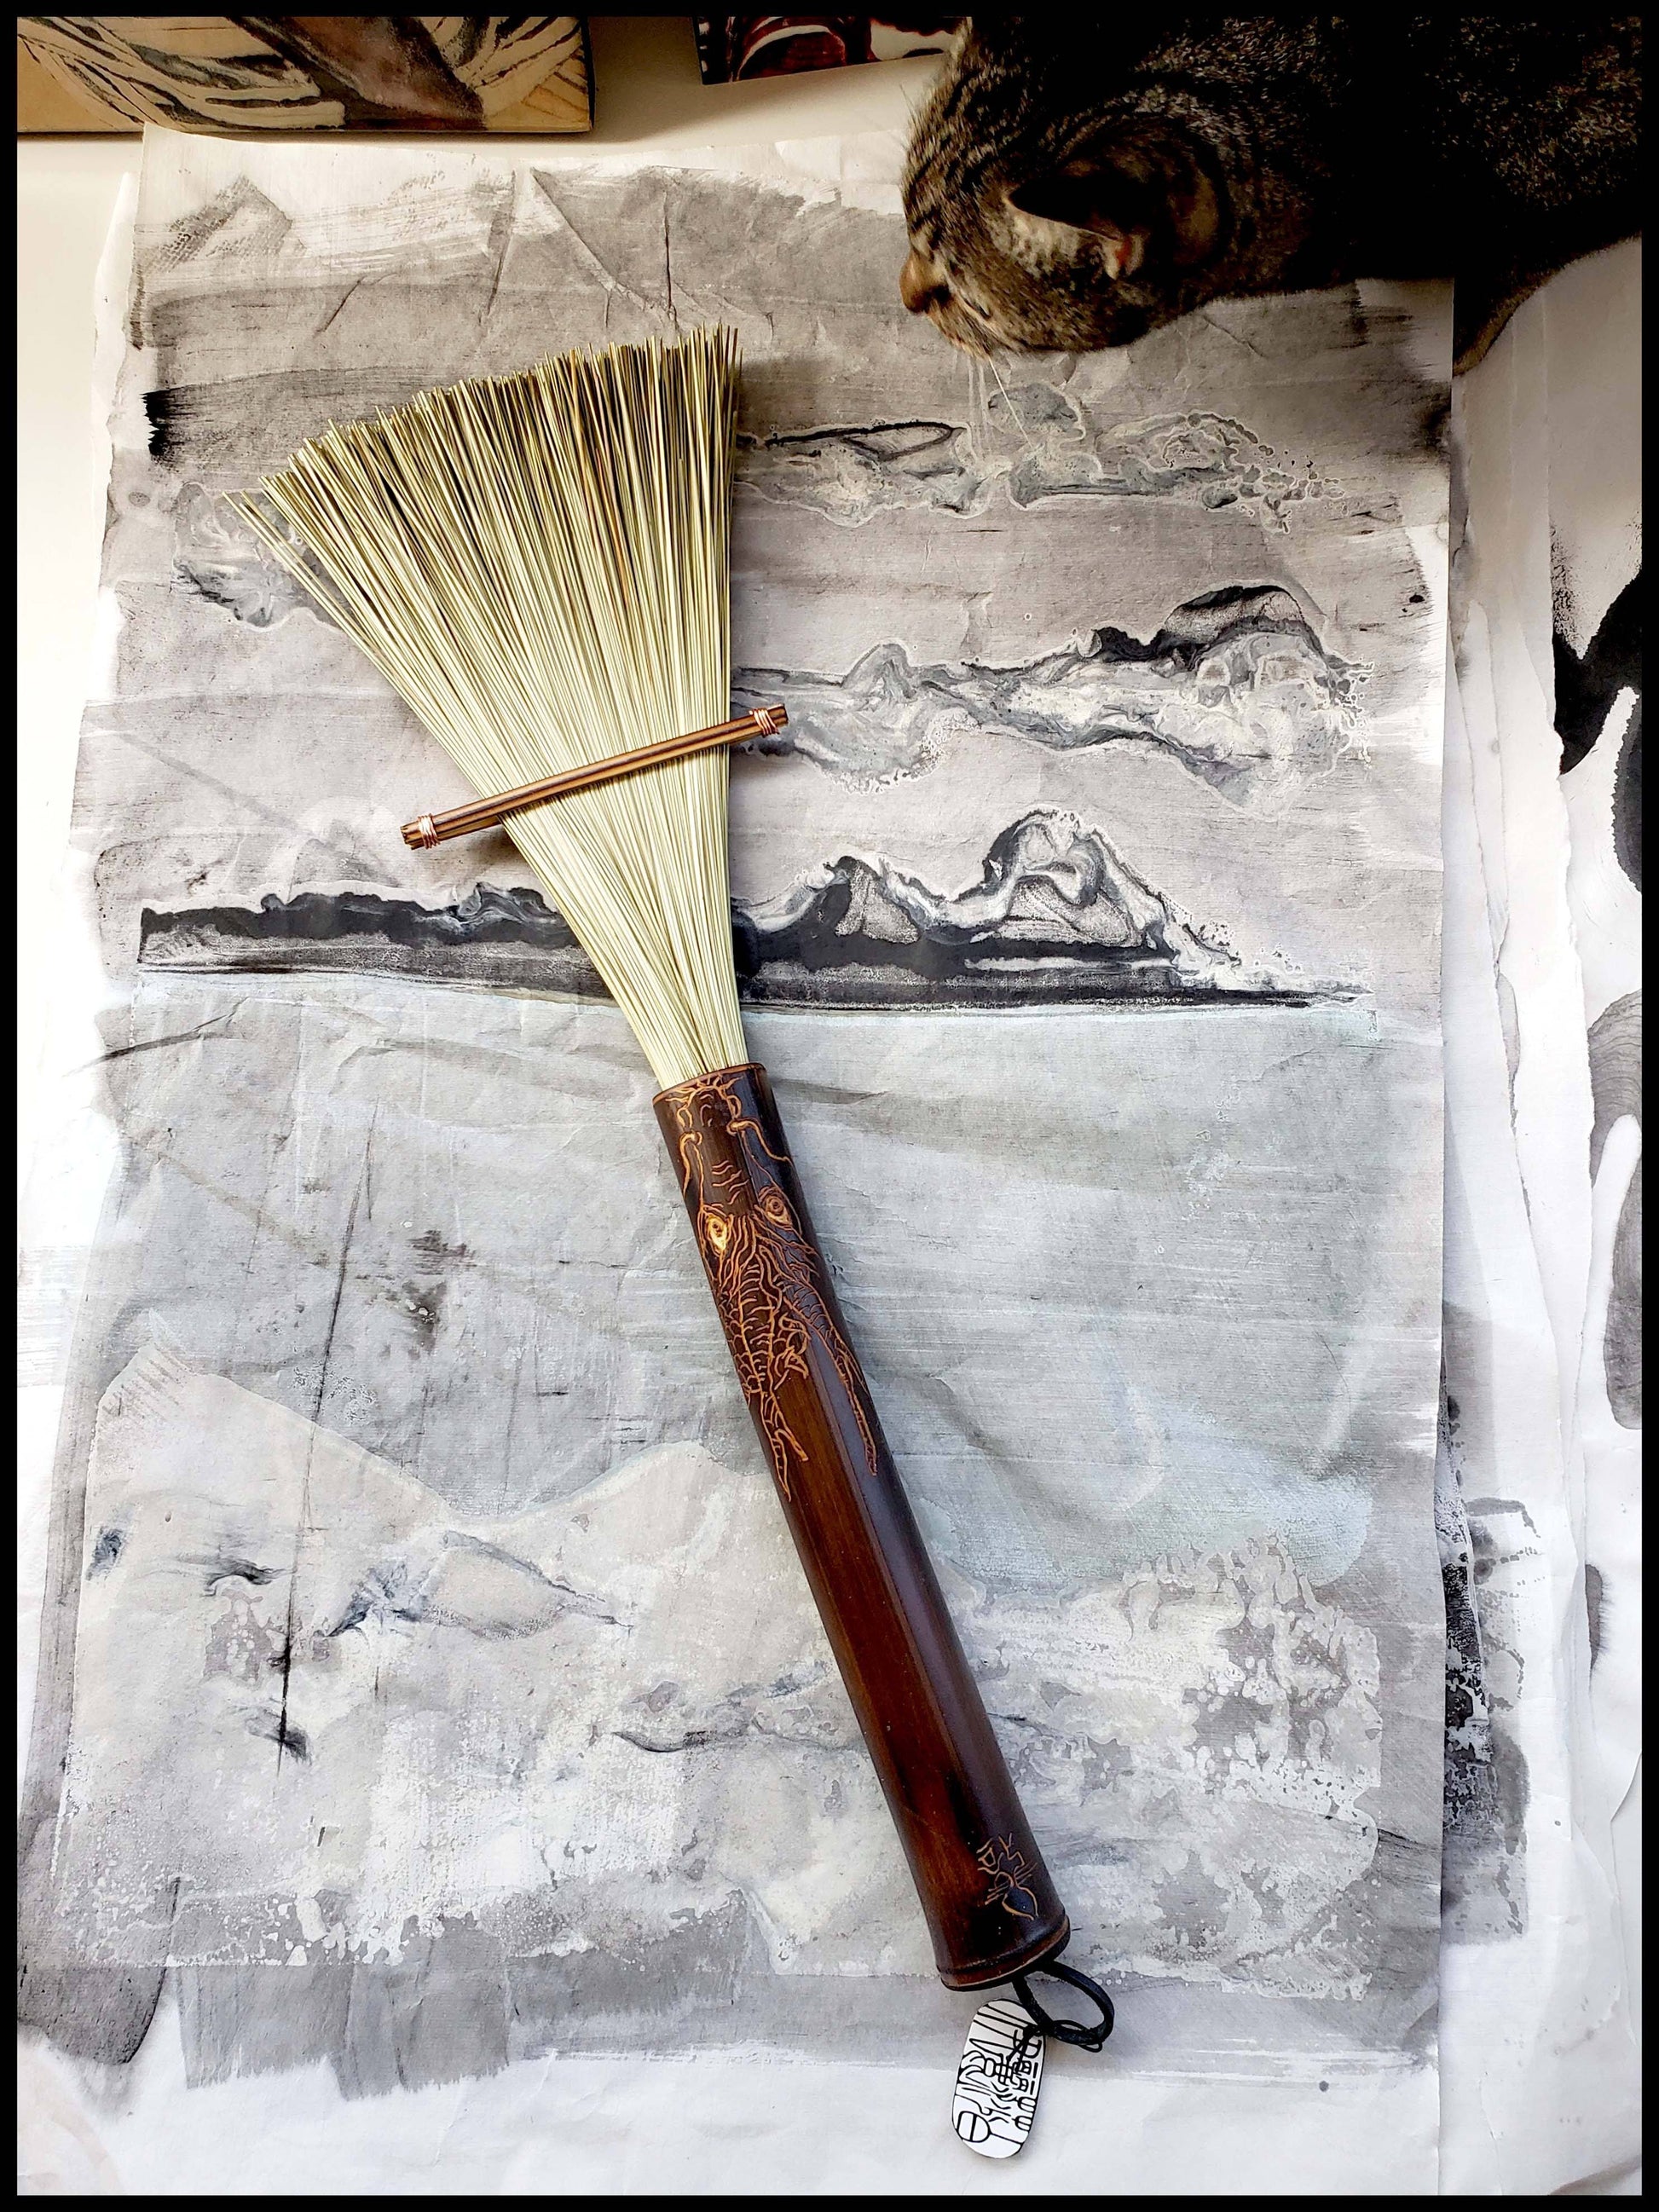 Large African Fiber Fan Paint Brush with Bamboo Handle Art Supplies Elizabeth Schowachert Art